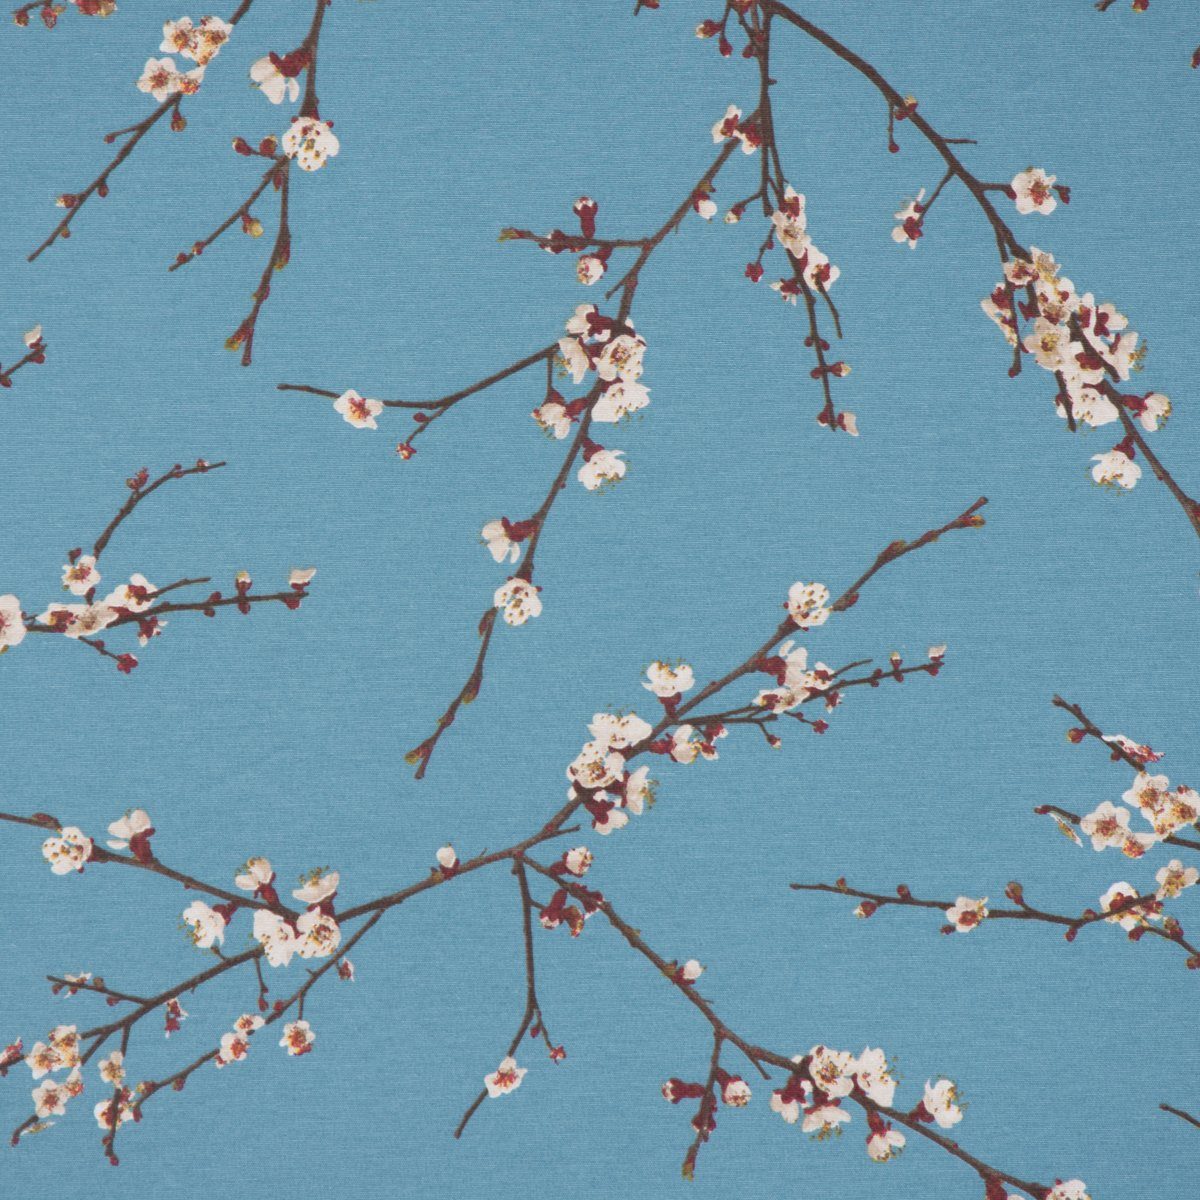 SCHÖNER LEBEN. Stoff »Dekostoff Canvas Ottoman Baumwollstoff Japan  Kirschzweige Kirschblüten blau braun weiß 1,40m Breite« online kaufen | OTTO